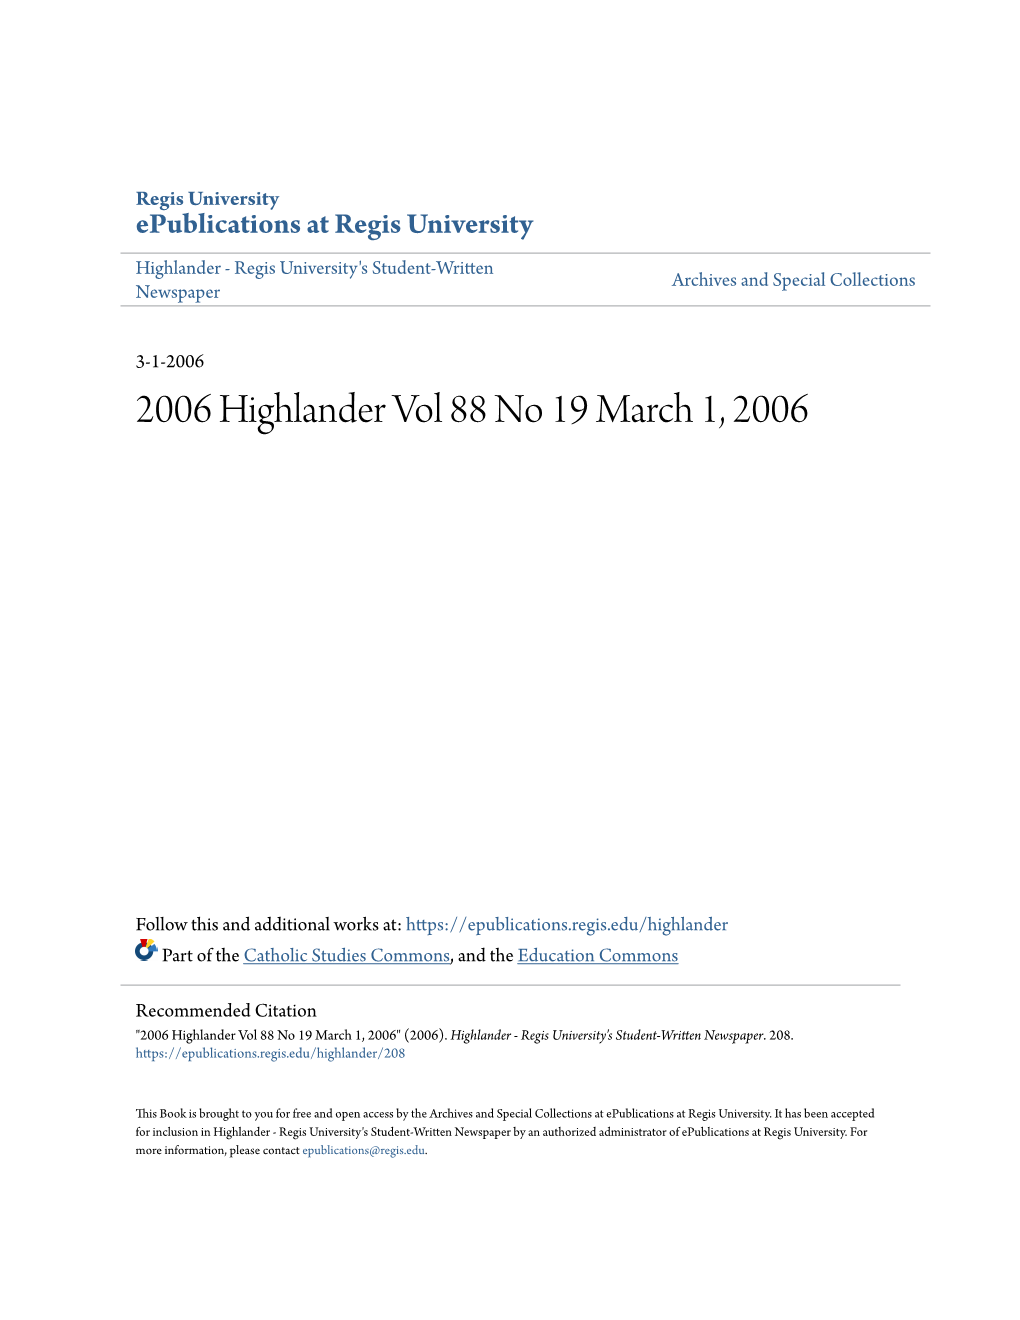 2006 Highlander Vol 88 No 19 March 1, 2006